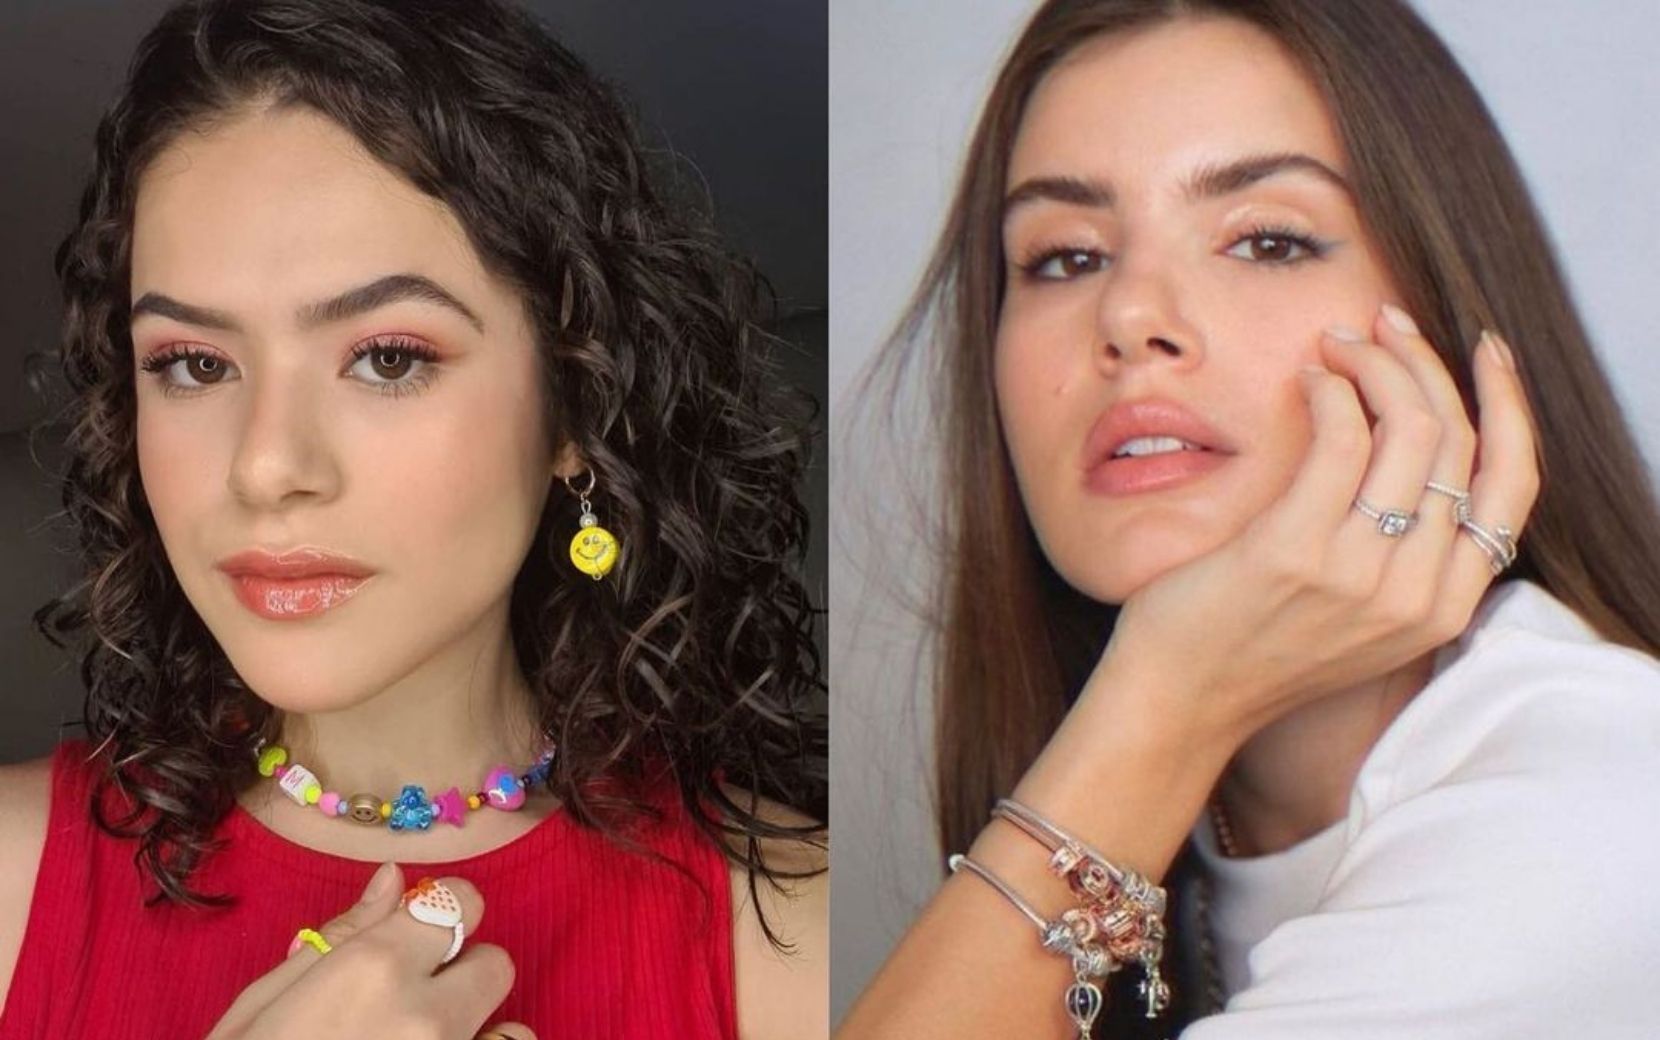 "De Volta Aos 15": Bruna Vieira revela quais atores vão interpretar os mesmos personagens em idades diferentes na série 